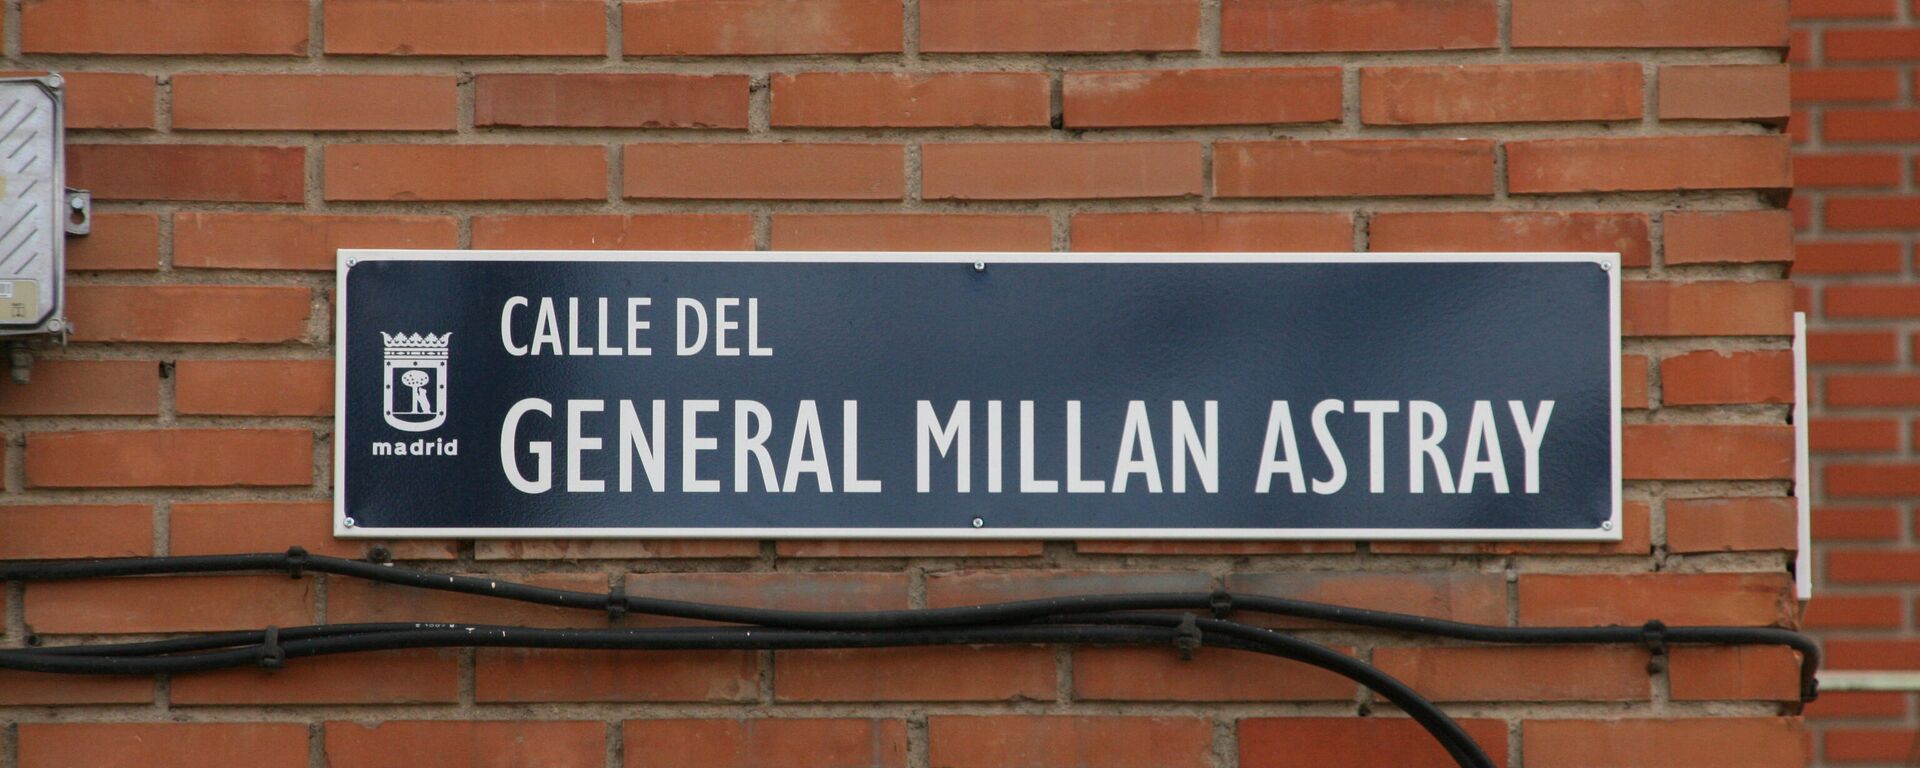 Placa de la calle General Millán Astray en el barrio de Las Águilas, distrito de Latina, en Madrid - Sputnik Mundo, 1920, 26.08.2021